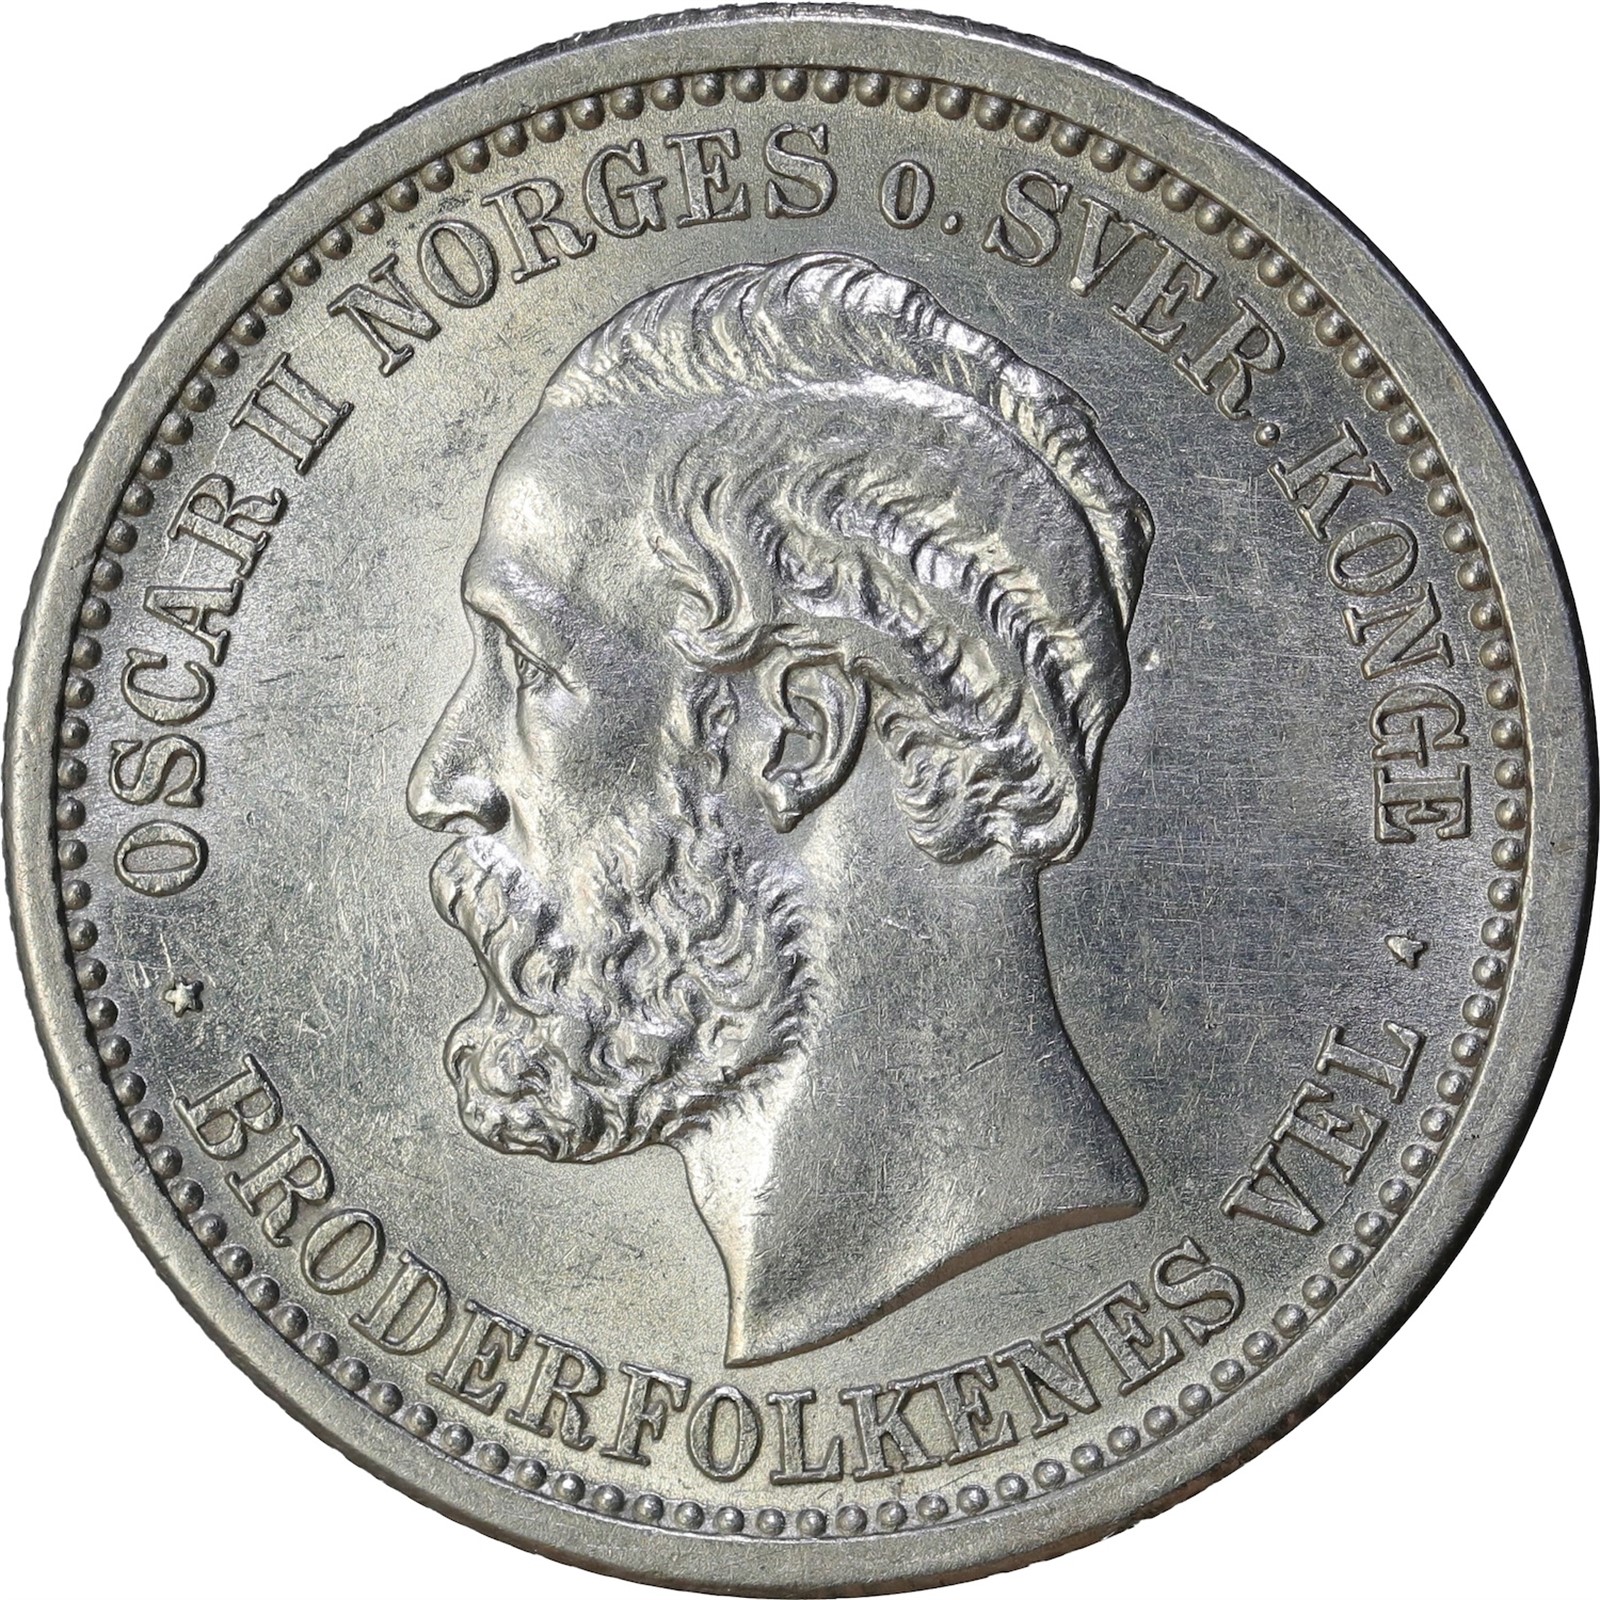 NORWAY. Oscar II. 1 Krone / 30 Sk. Kv g0/01 (UNC)